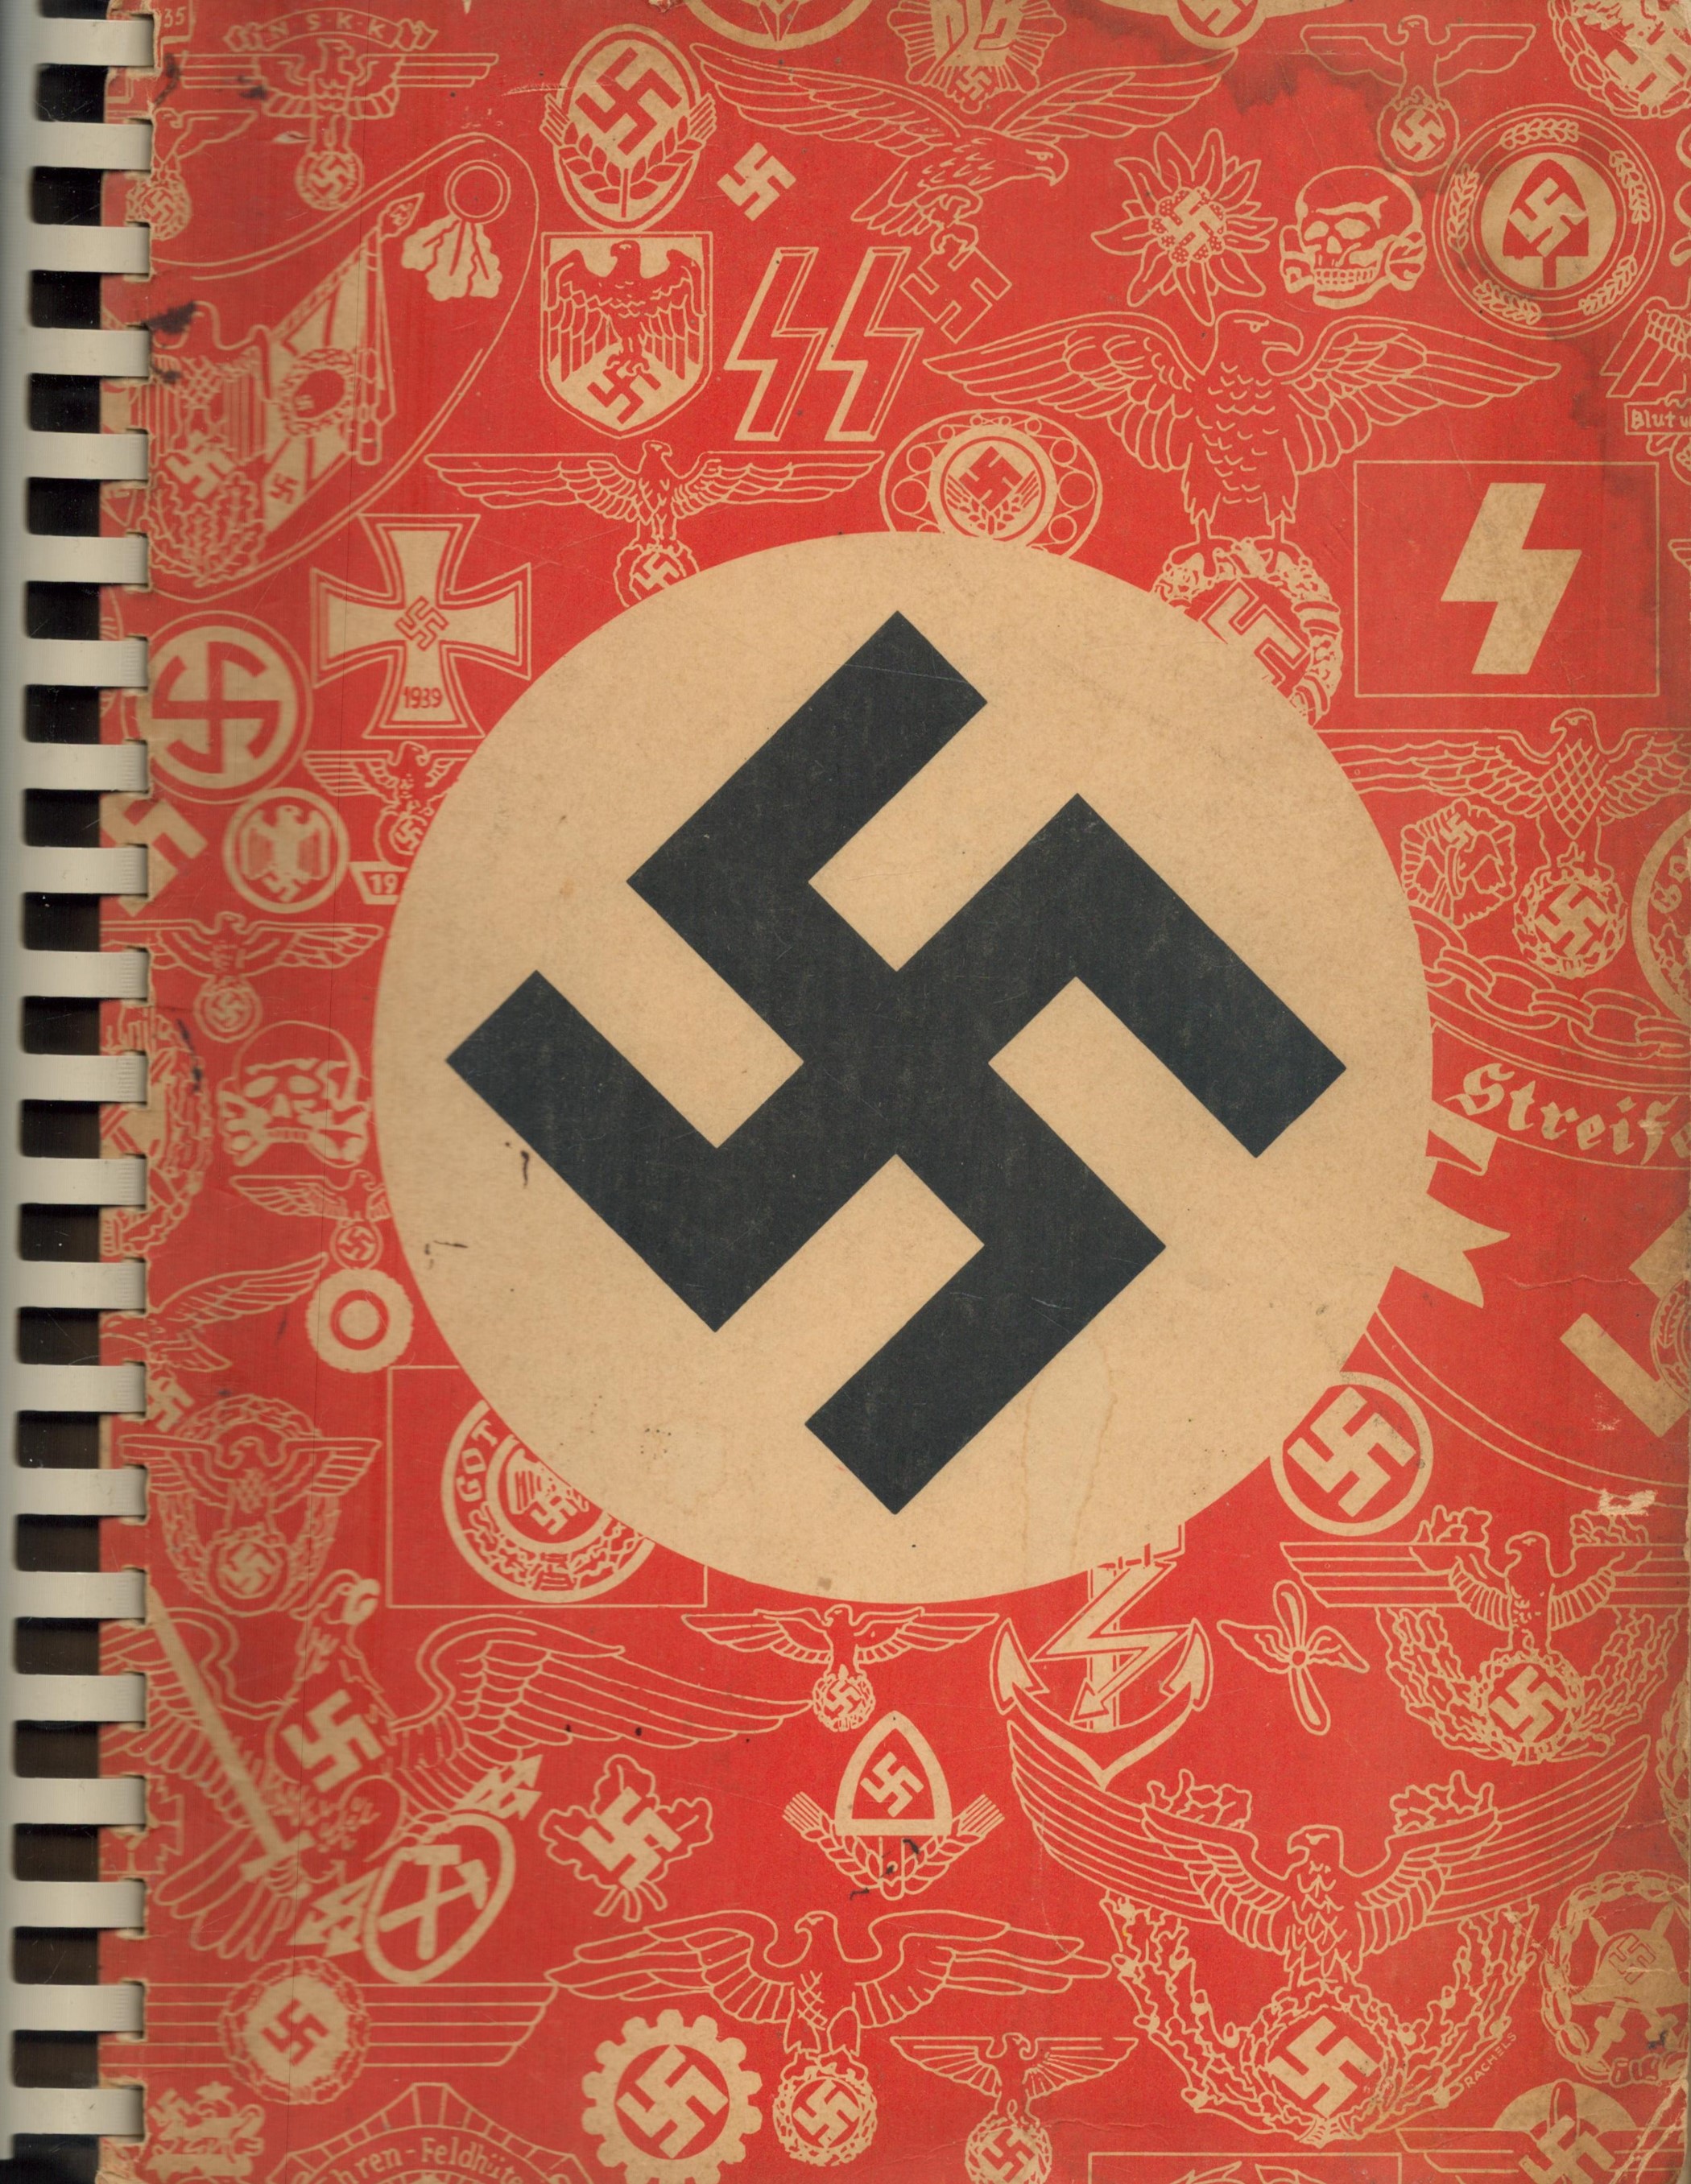 F.W. Assmann & Söhne Lüdenscheid Luftwaffe original catalogue and price list. 12x9 inch in size. - Image 2 of 12